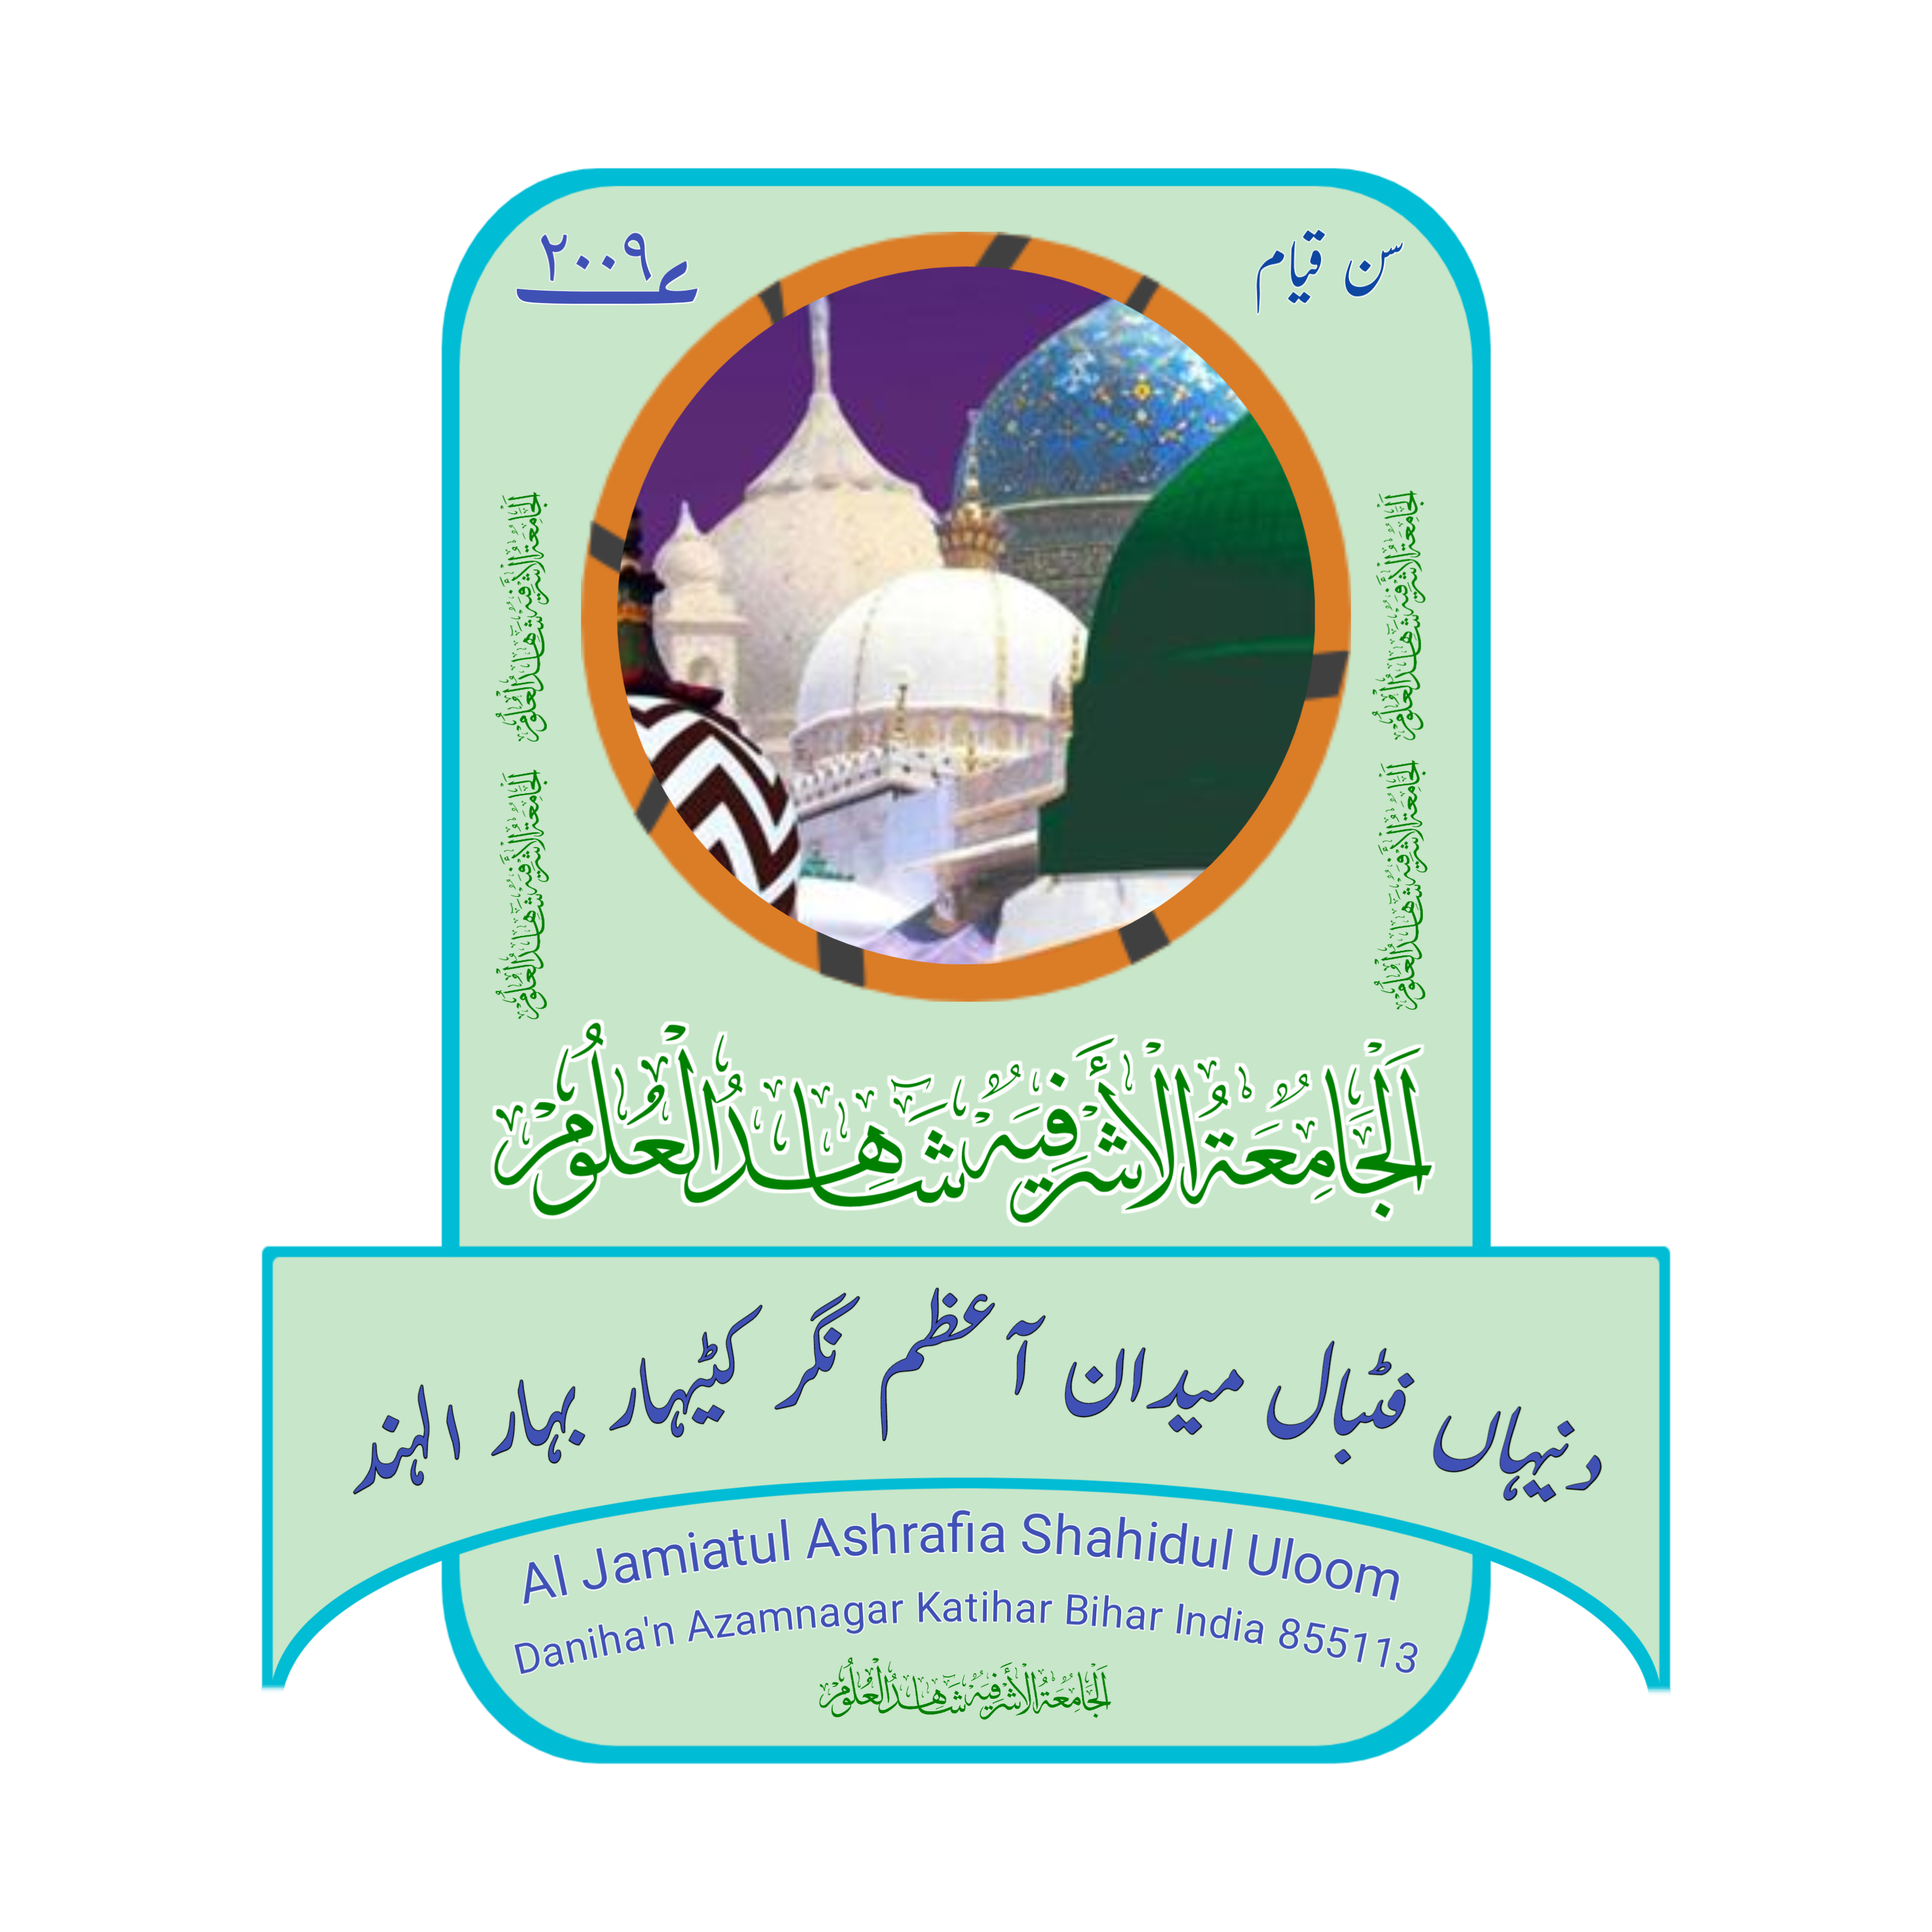 Daniha Madrasa Al Jamiatul Ashrafia Shahidul Uloom